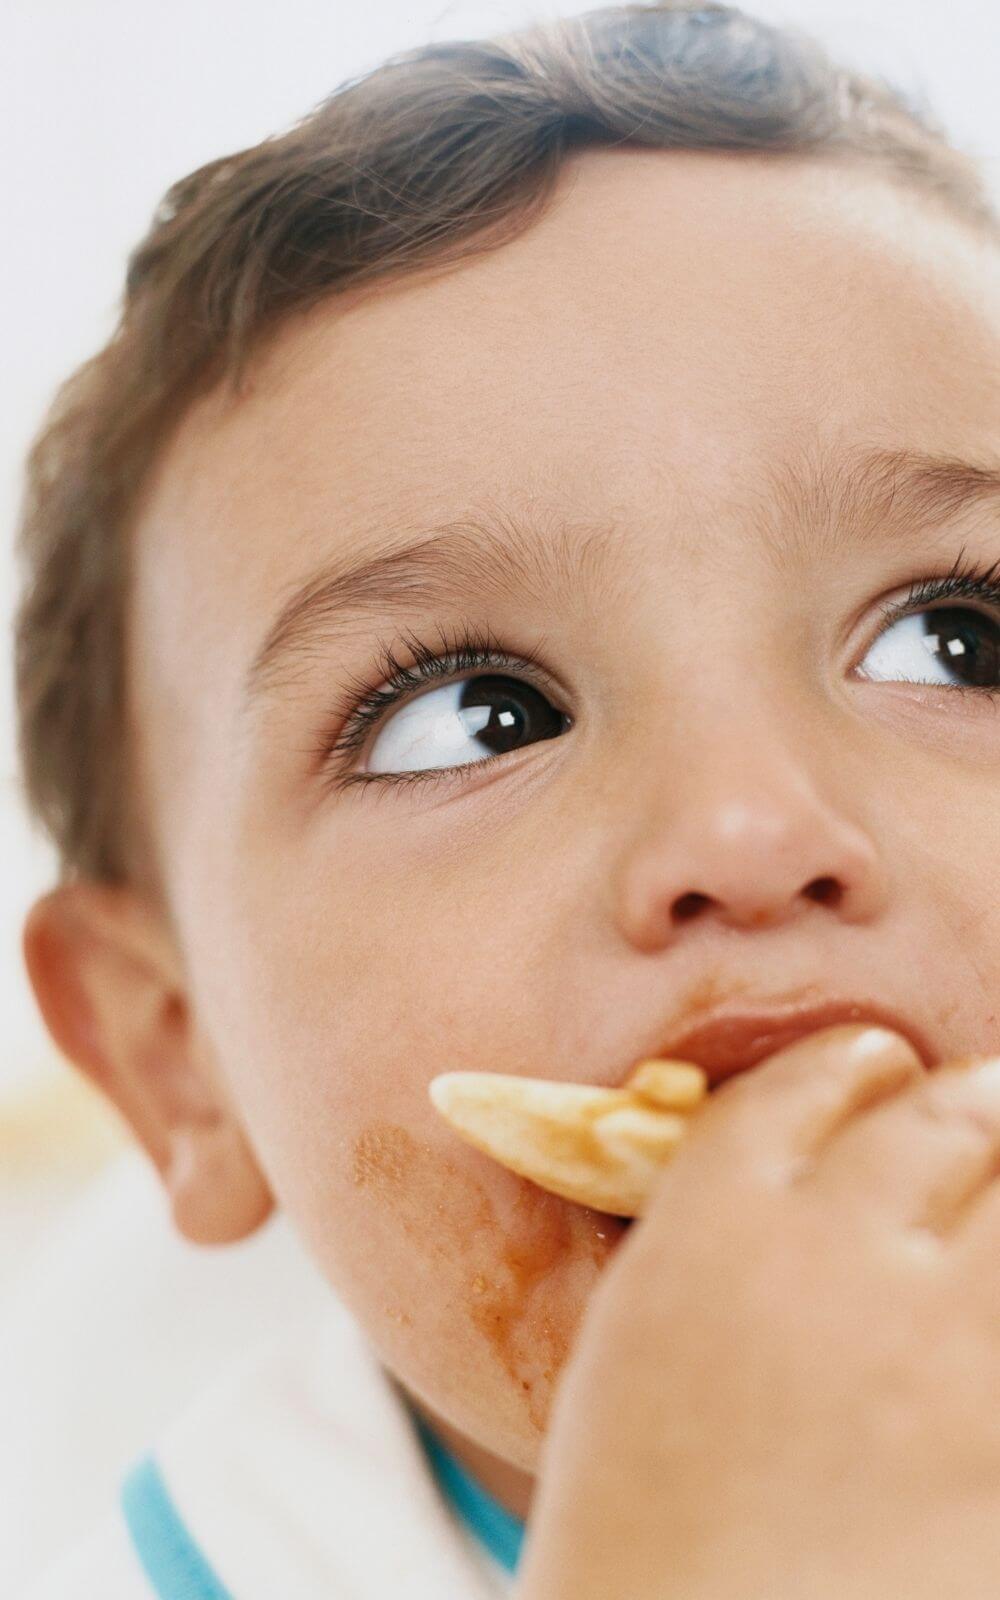 Toddler meal plan - toddler eating 